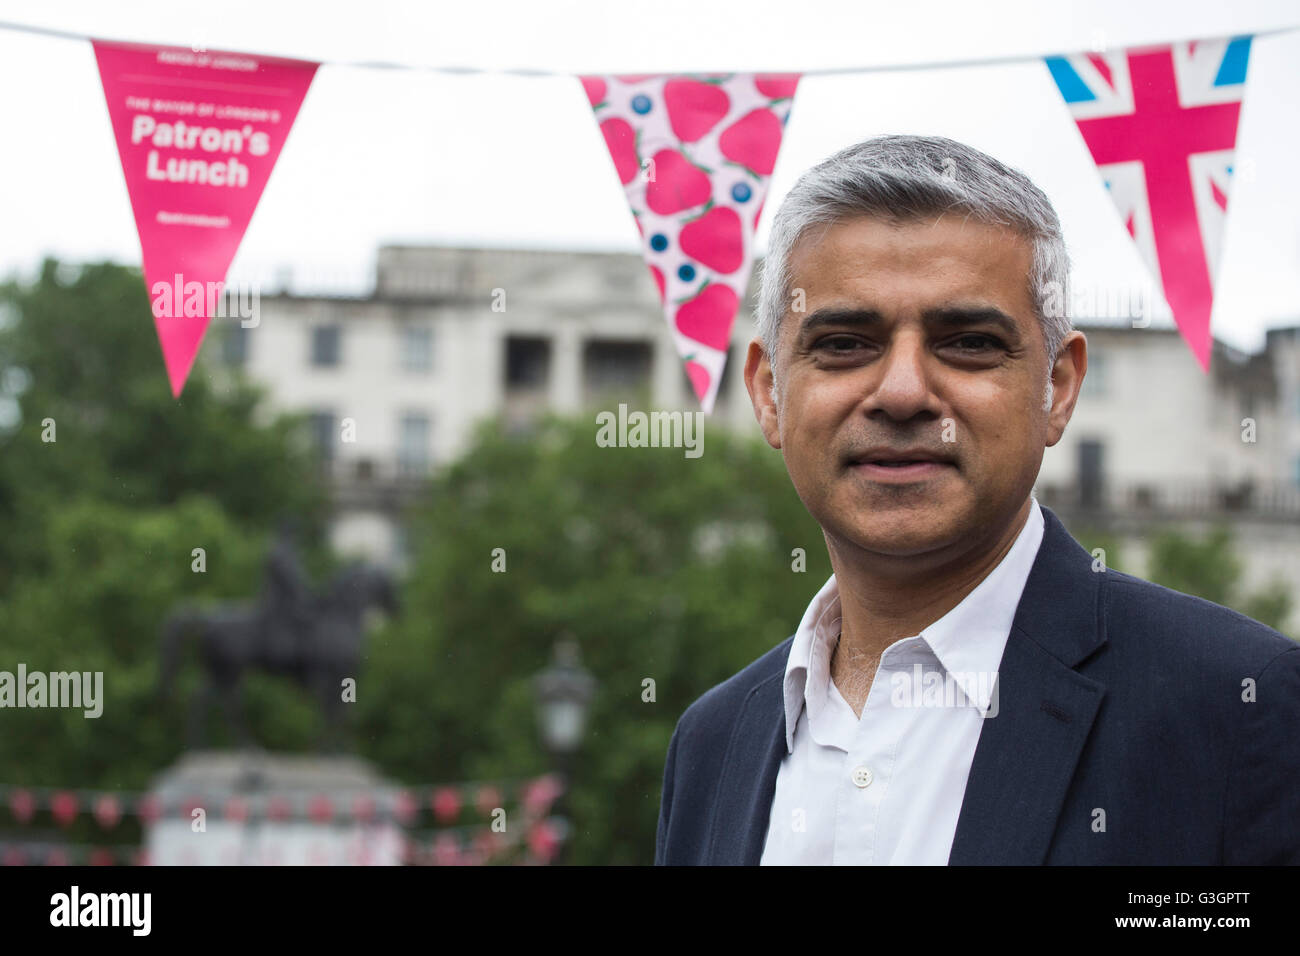 Londres, Reino Unido. 12 de junio de 2016. Sadiq Khan, Alcalde de Londres, el político británico y miembro del Partido Laborista. Foto de stock